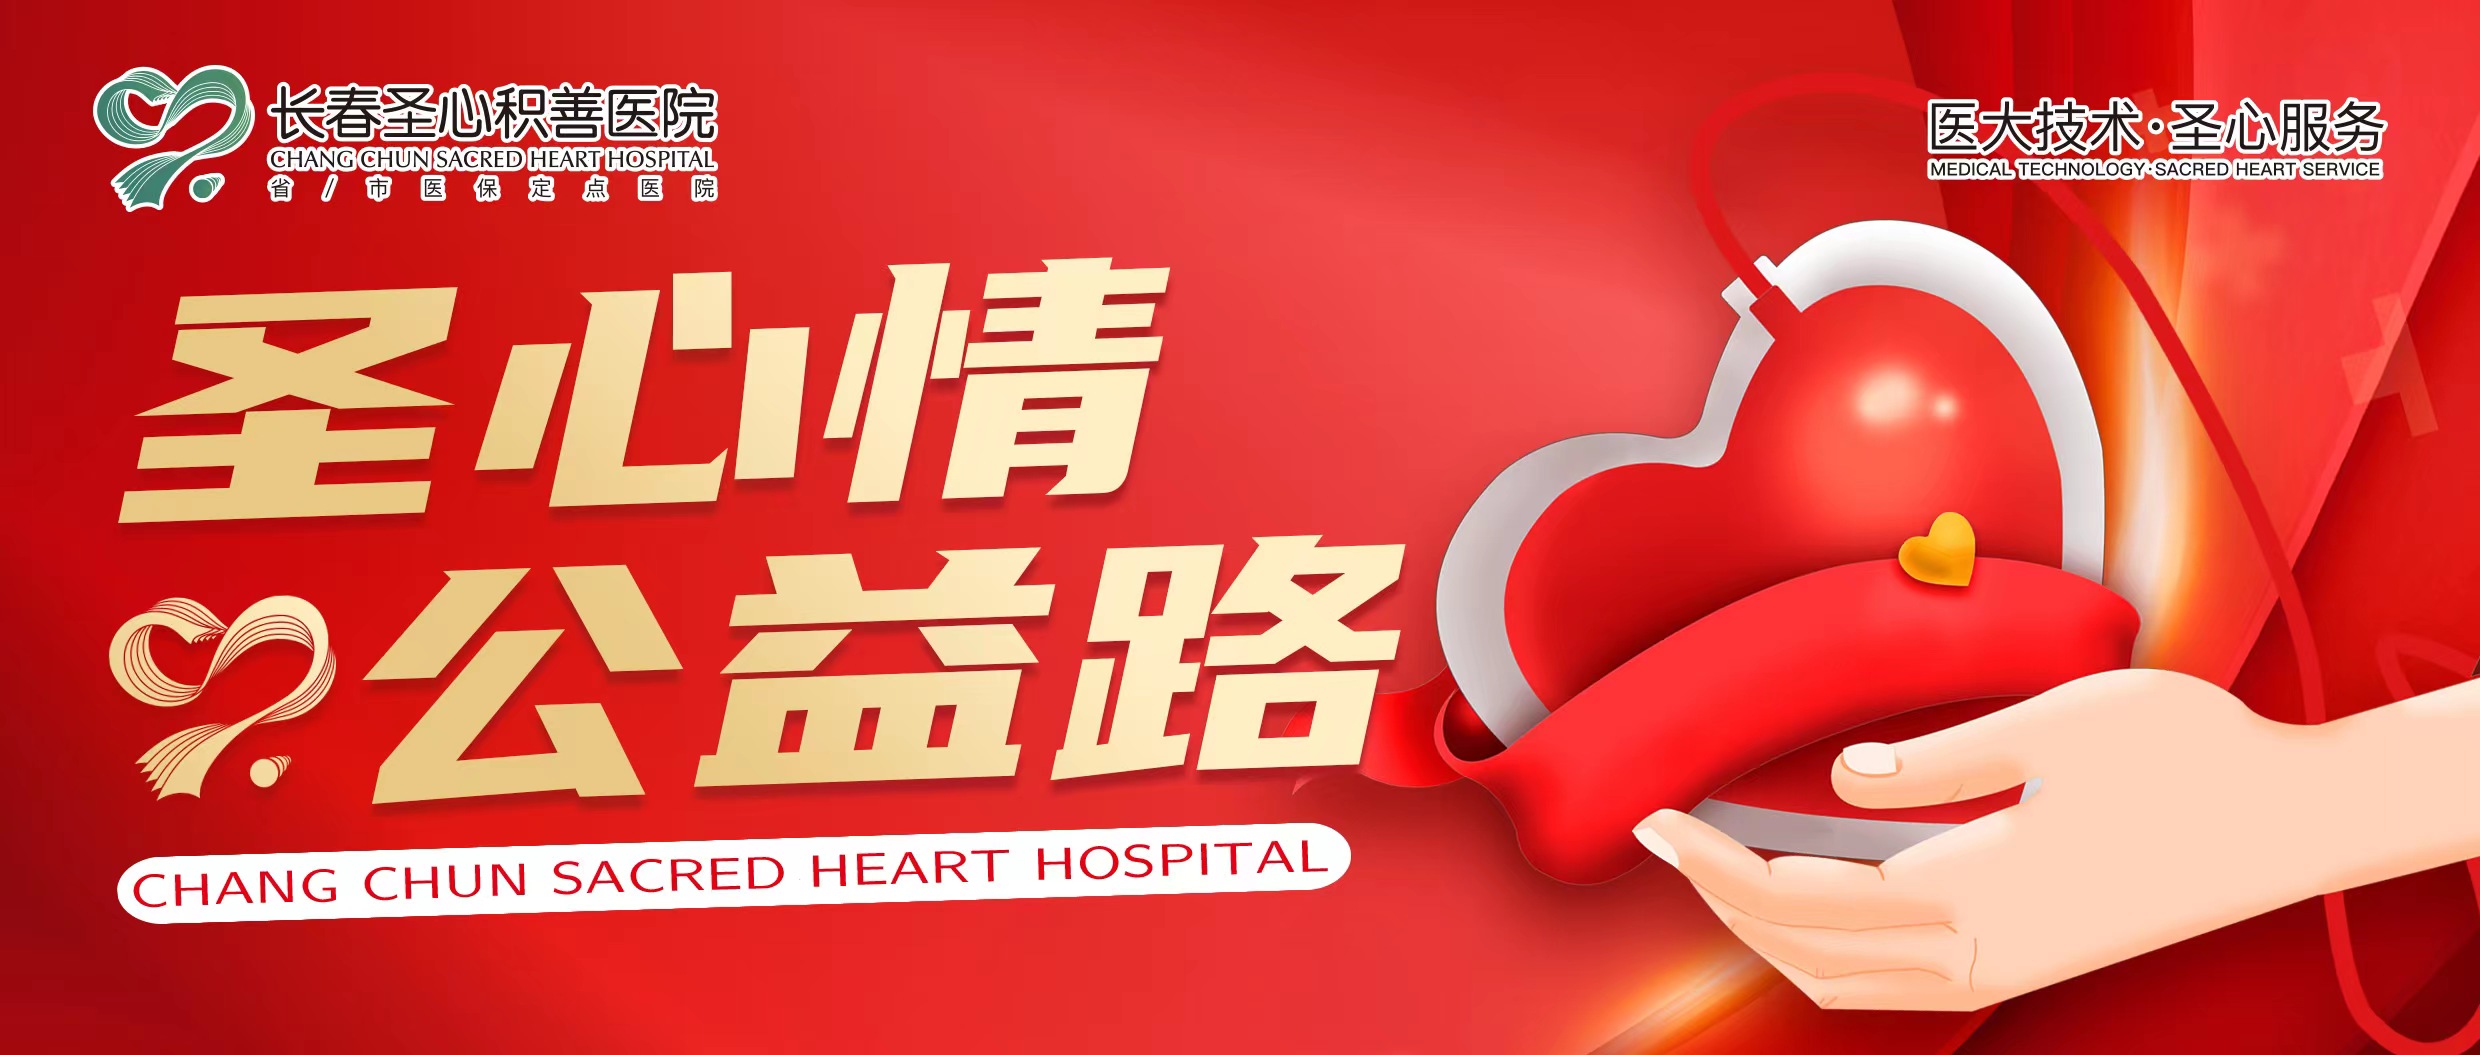 【圣心情 公益路】长春圣心积善医院第七届公益献血活动，邀您共行